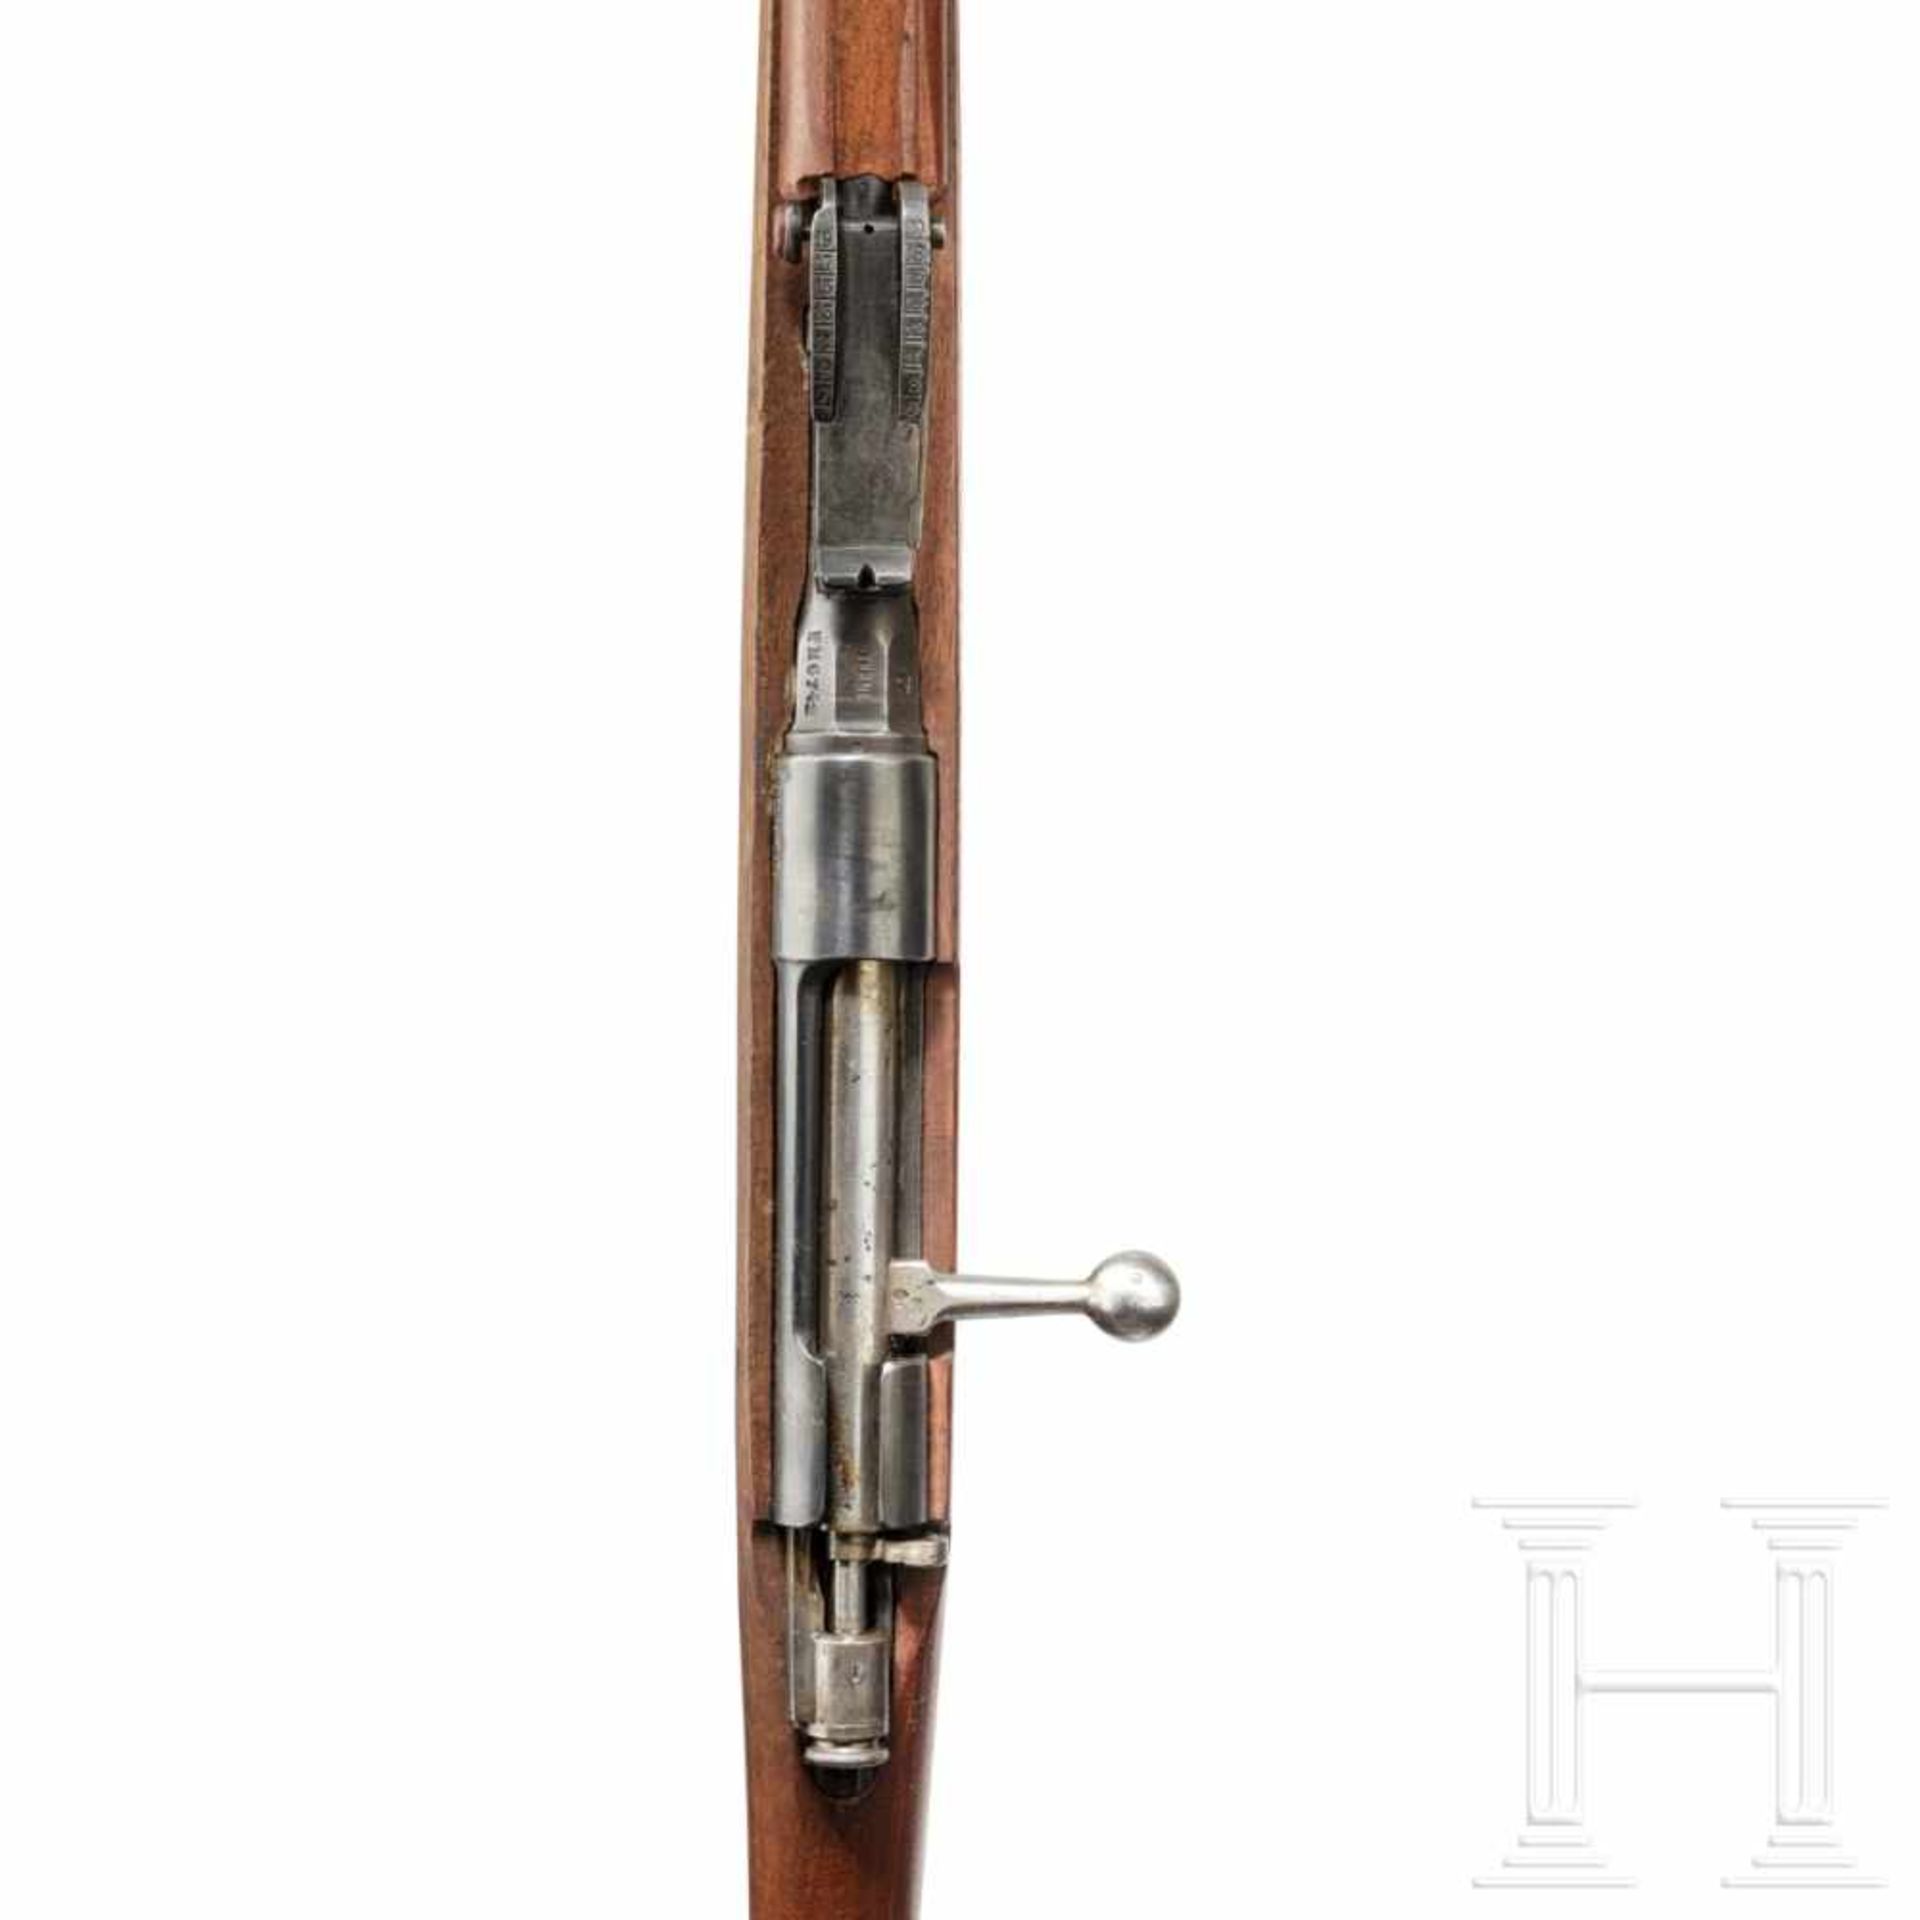 Gewehr Carcano Mod. 1891Kal. 6,5x52, Nr. EM6742, Lauf matt. Sechsschüssig. Dt. Beschuss. Fertigung - Bild 3 aus 3